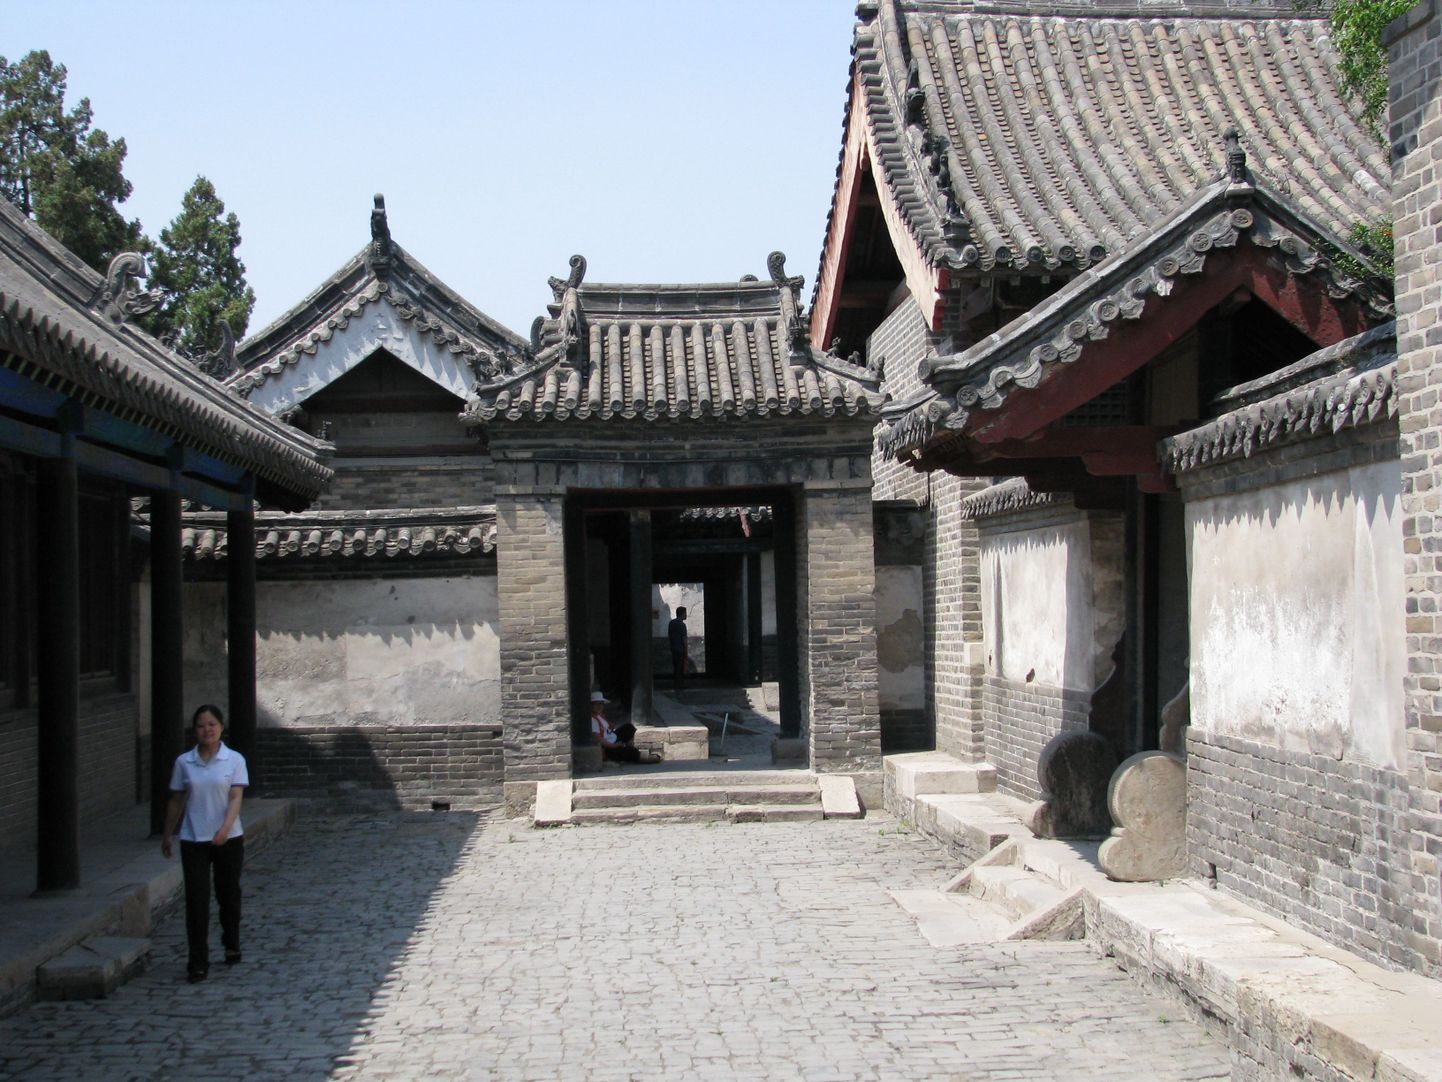 Confutsiuse häärberile ehk rikaste inimeste eluhoonete kompleksile
iseloomulik vaade.